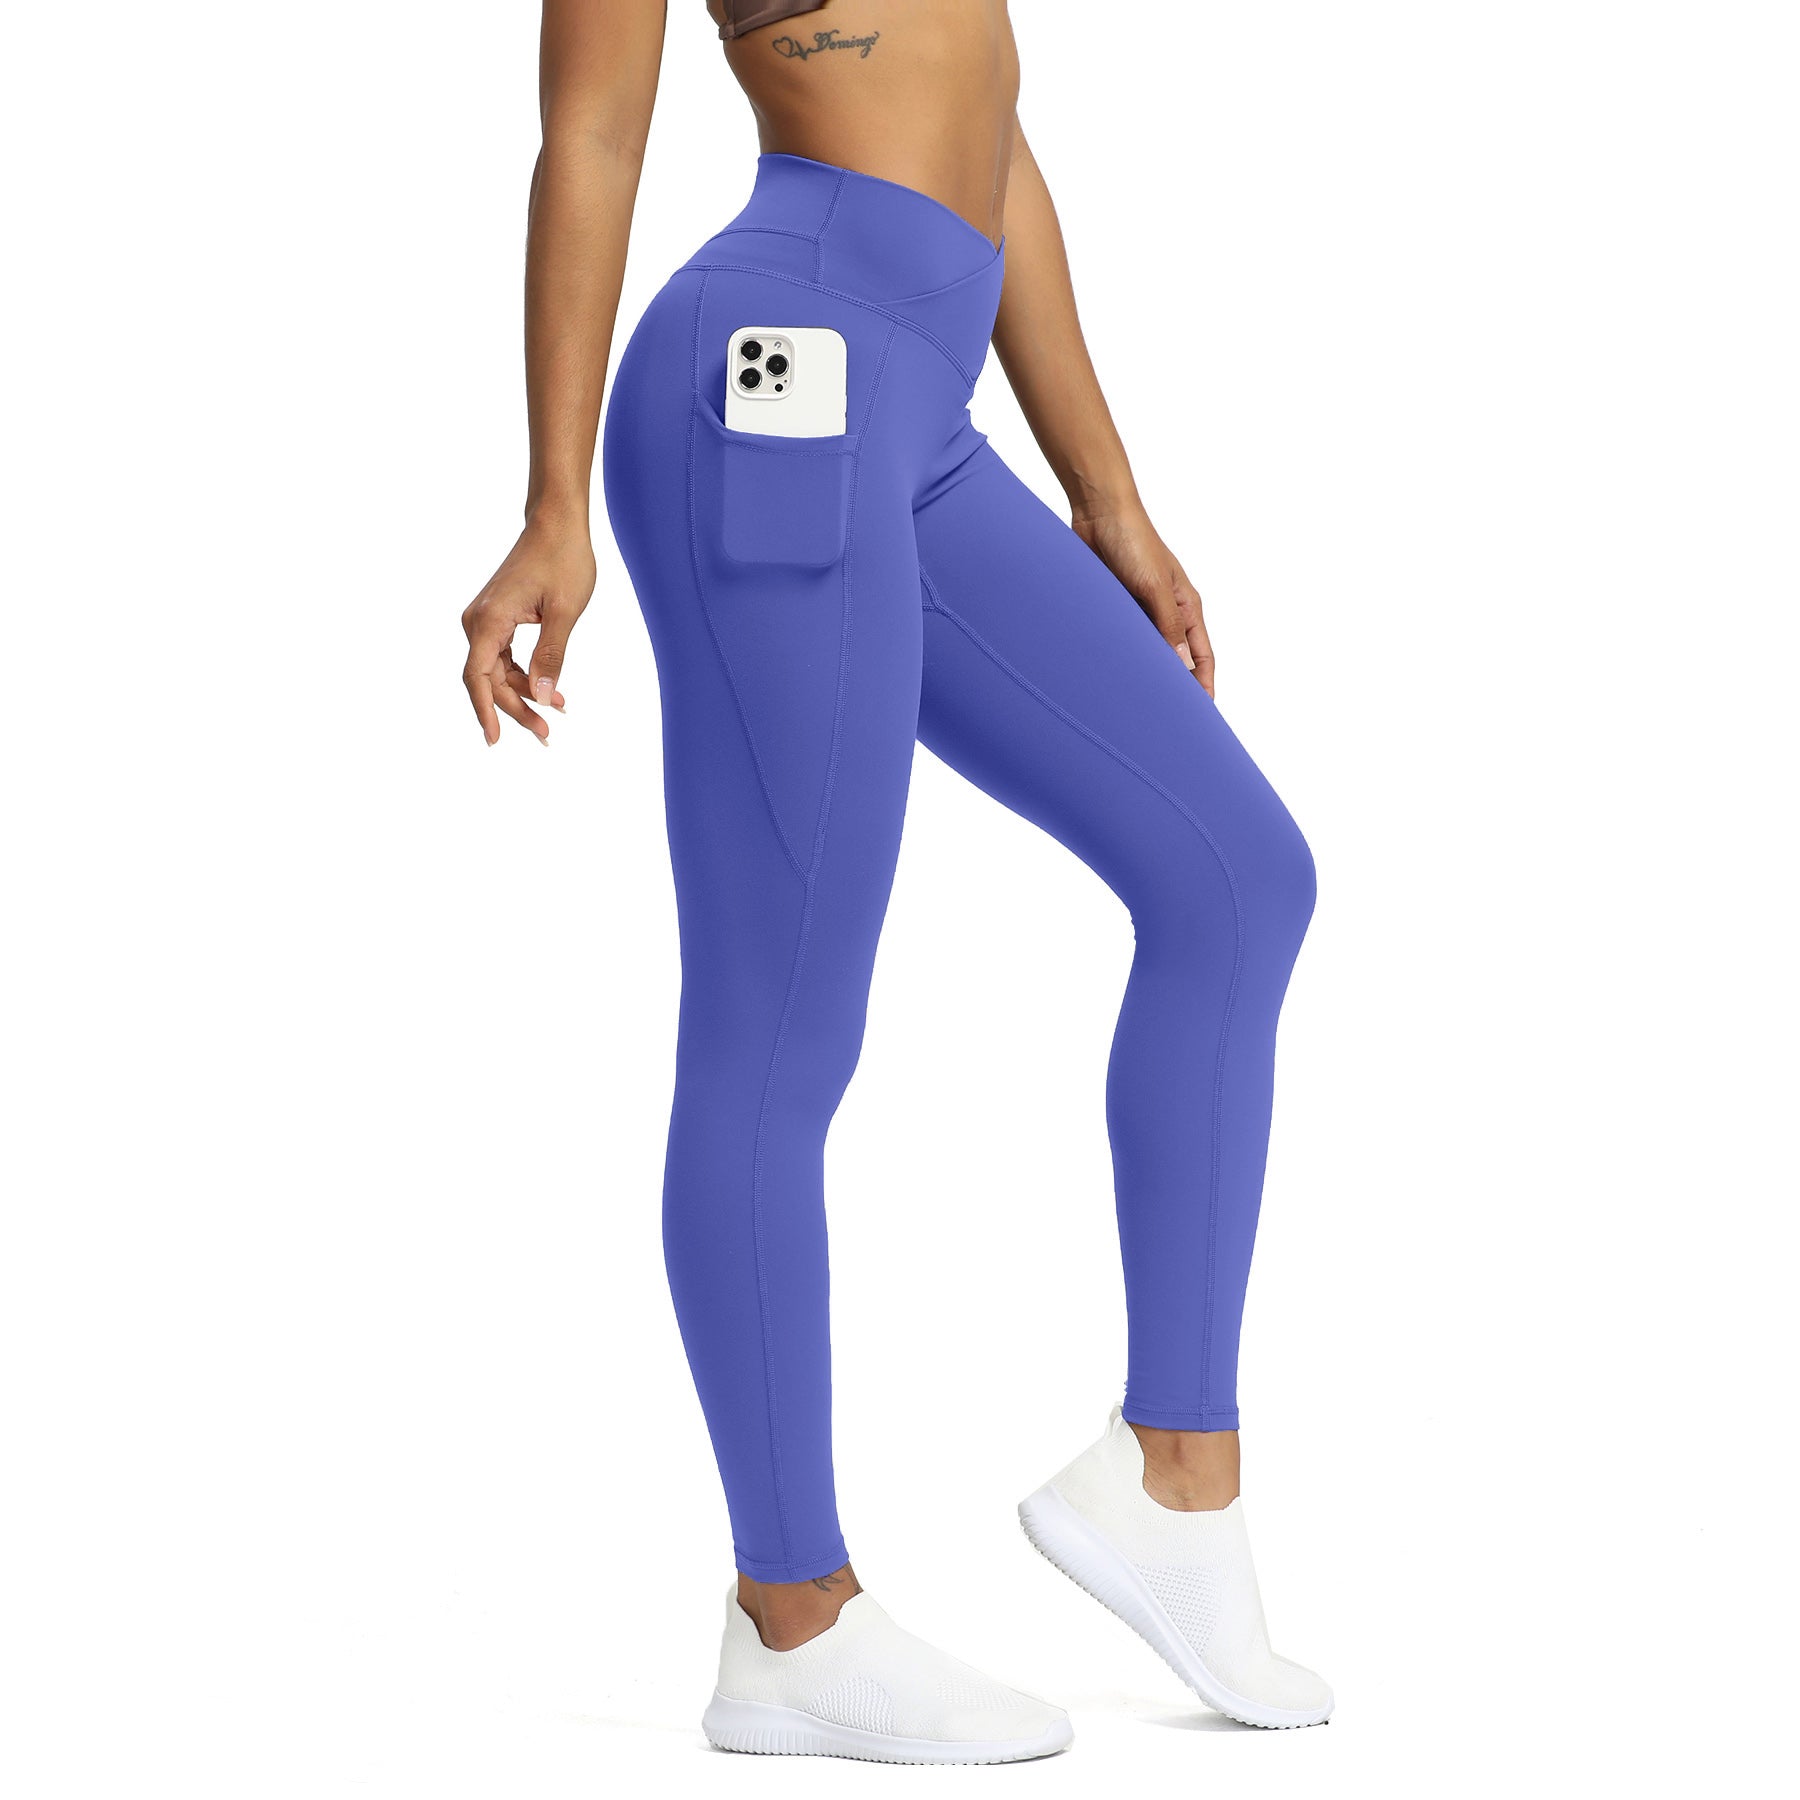 Buy Kica Second Skin Criss Cross Waistband Leggings For Yoga Purple Online